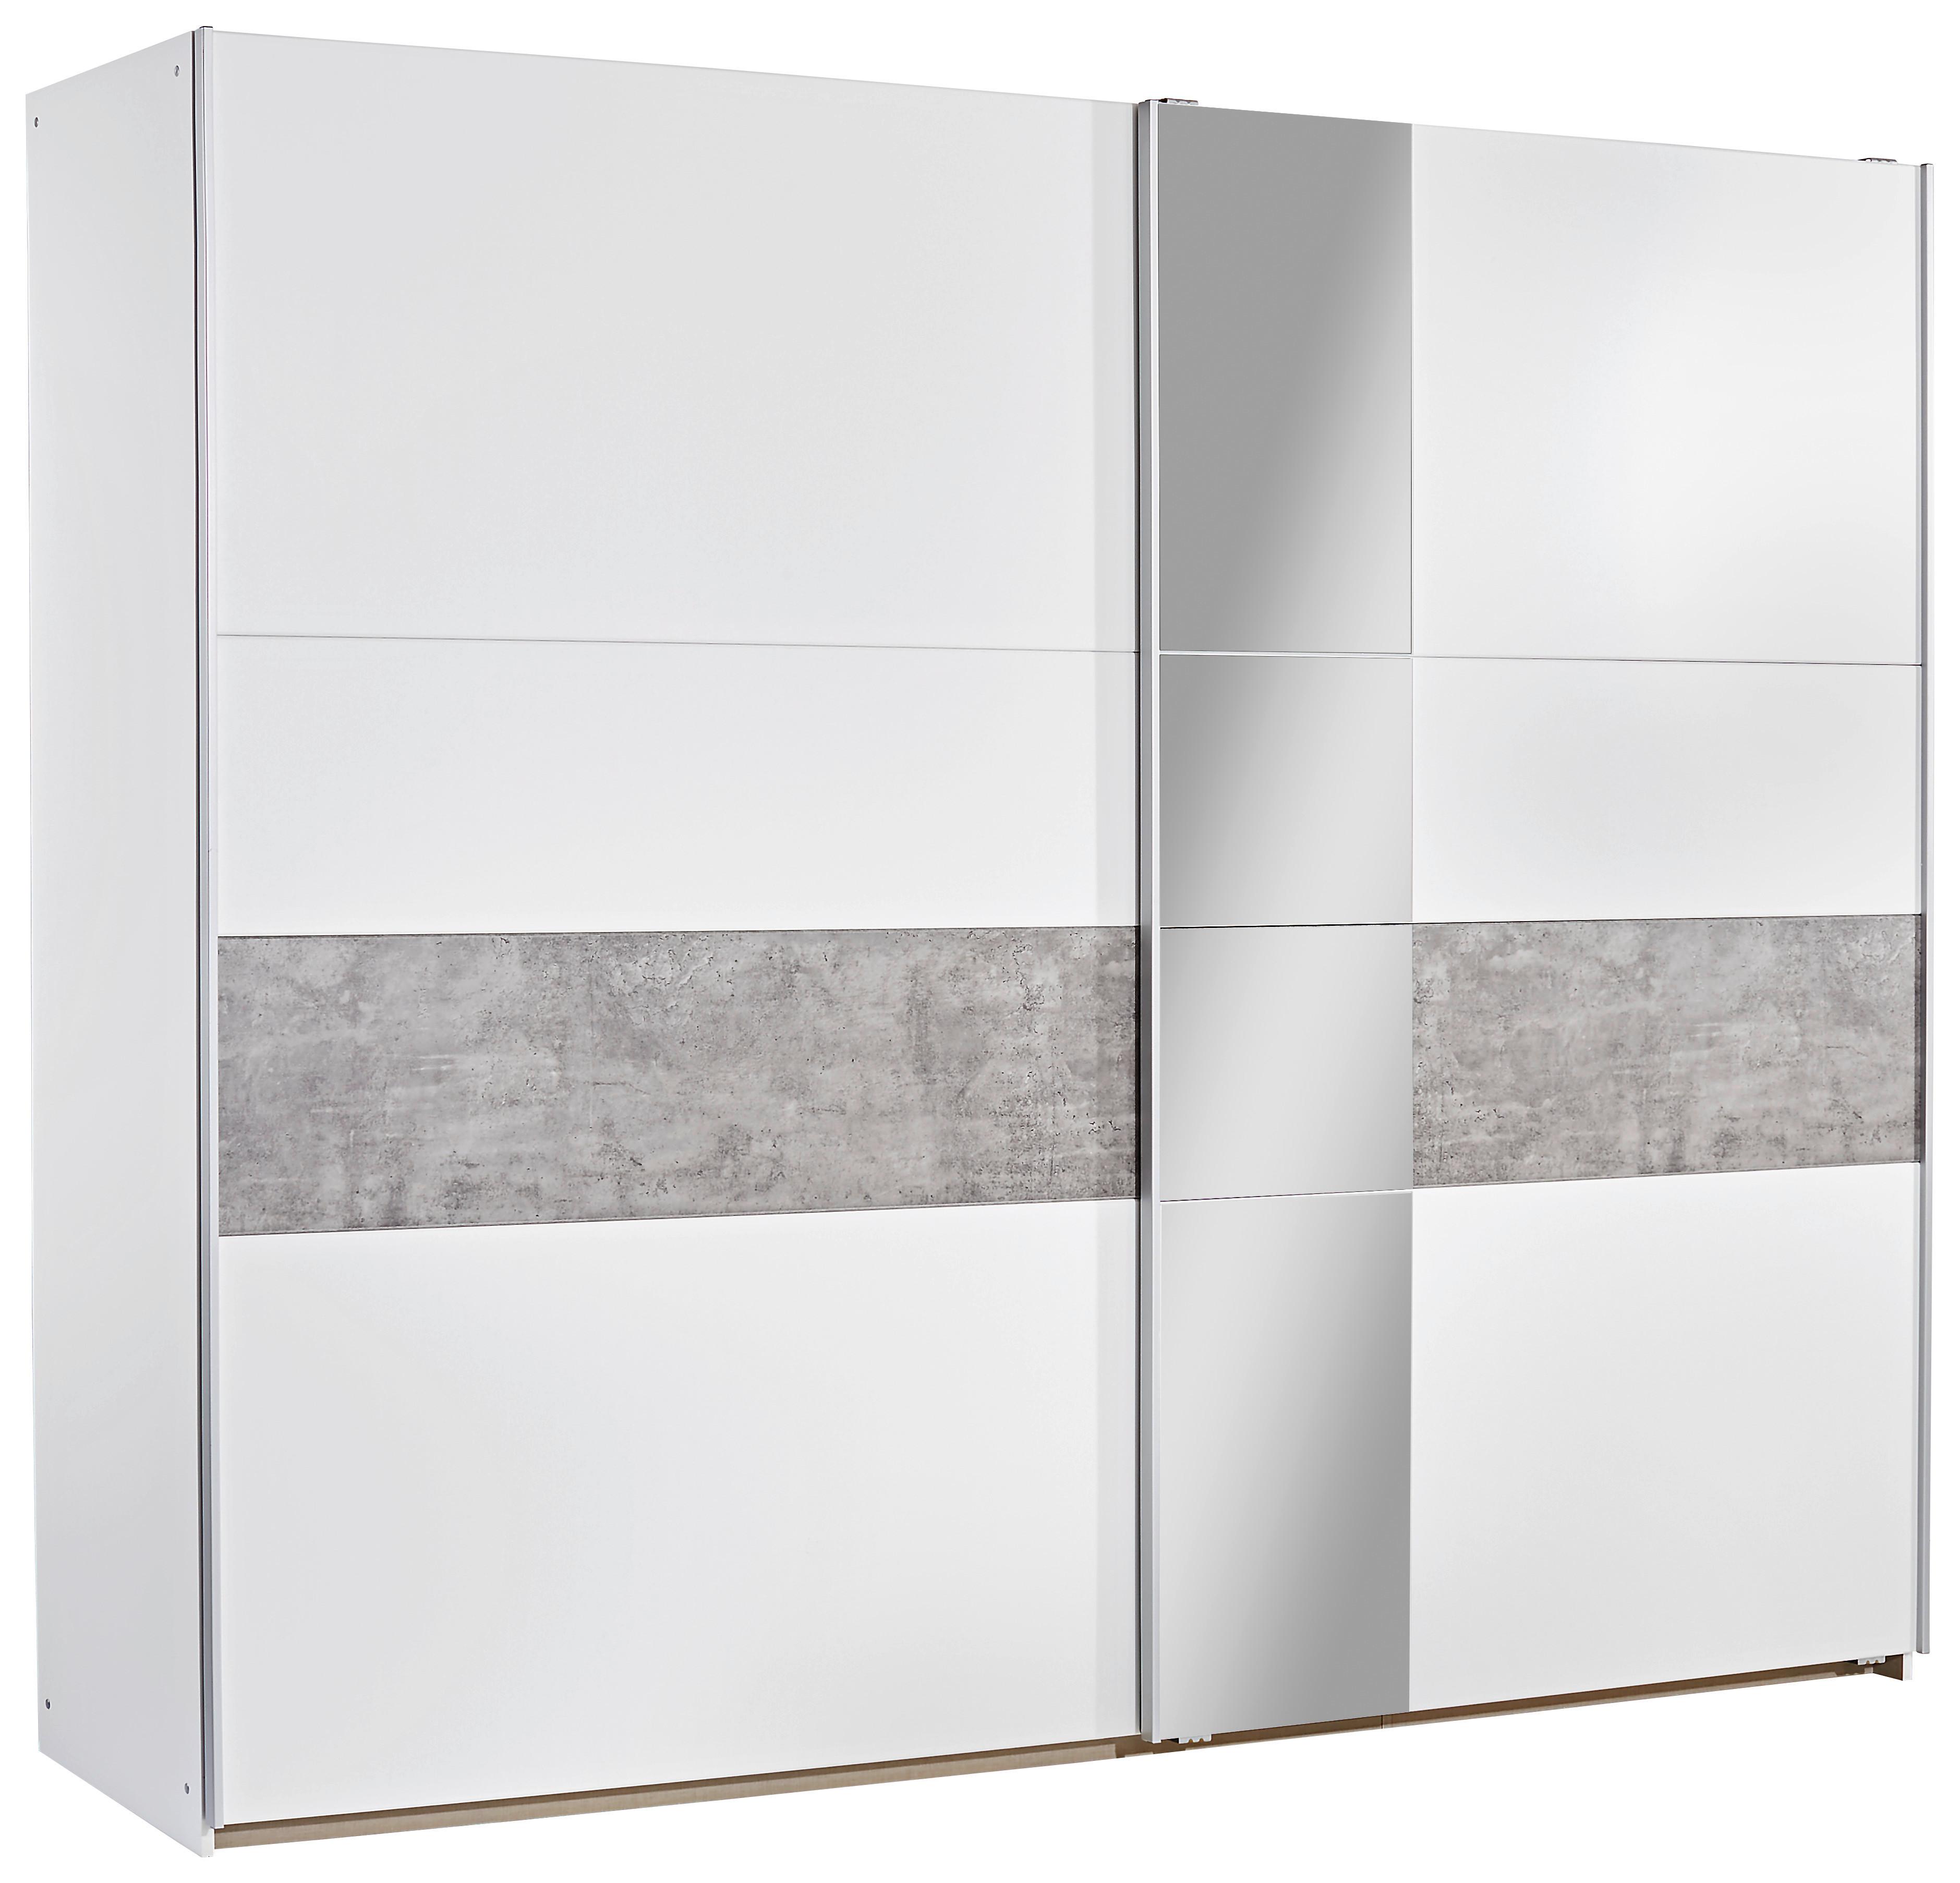 Dulap cu uşi glisante Korbach - alb/gri, Modern, material pe bază de lemn (261/210/59cm)